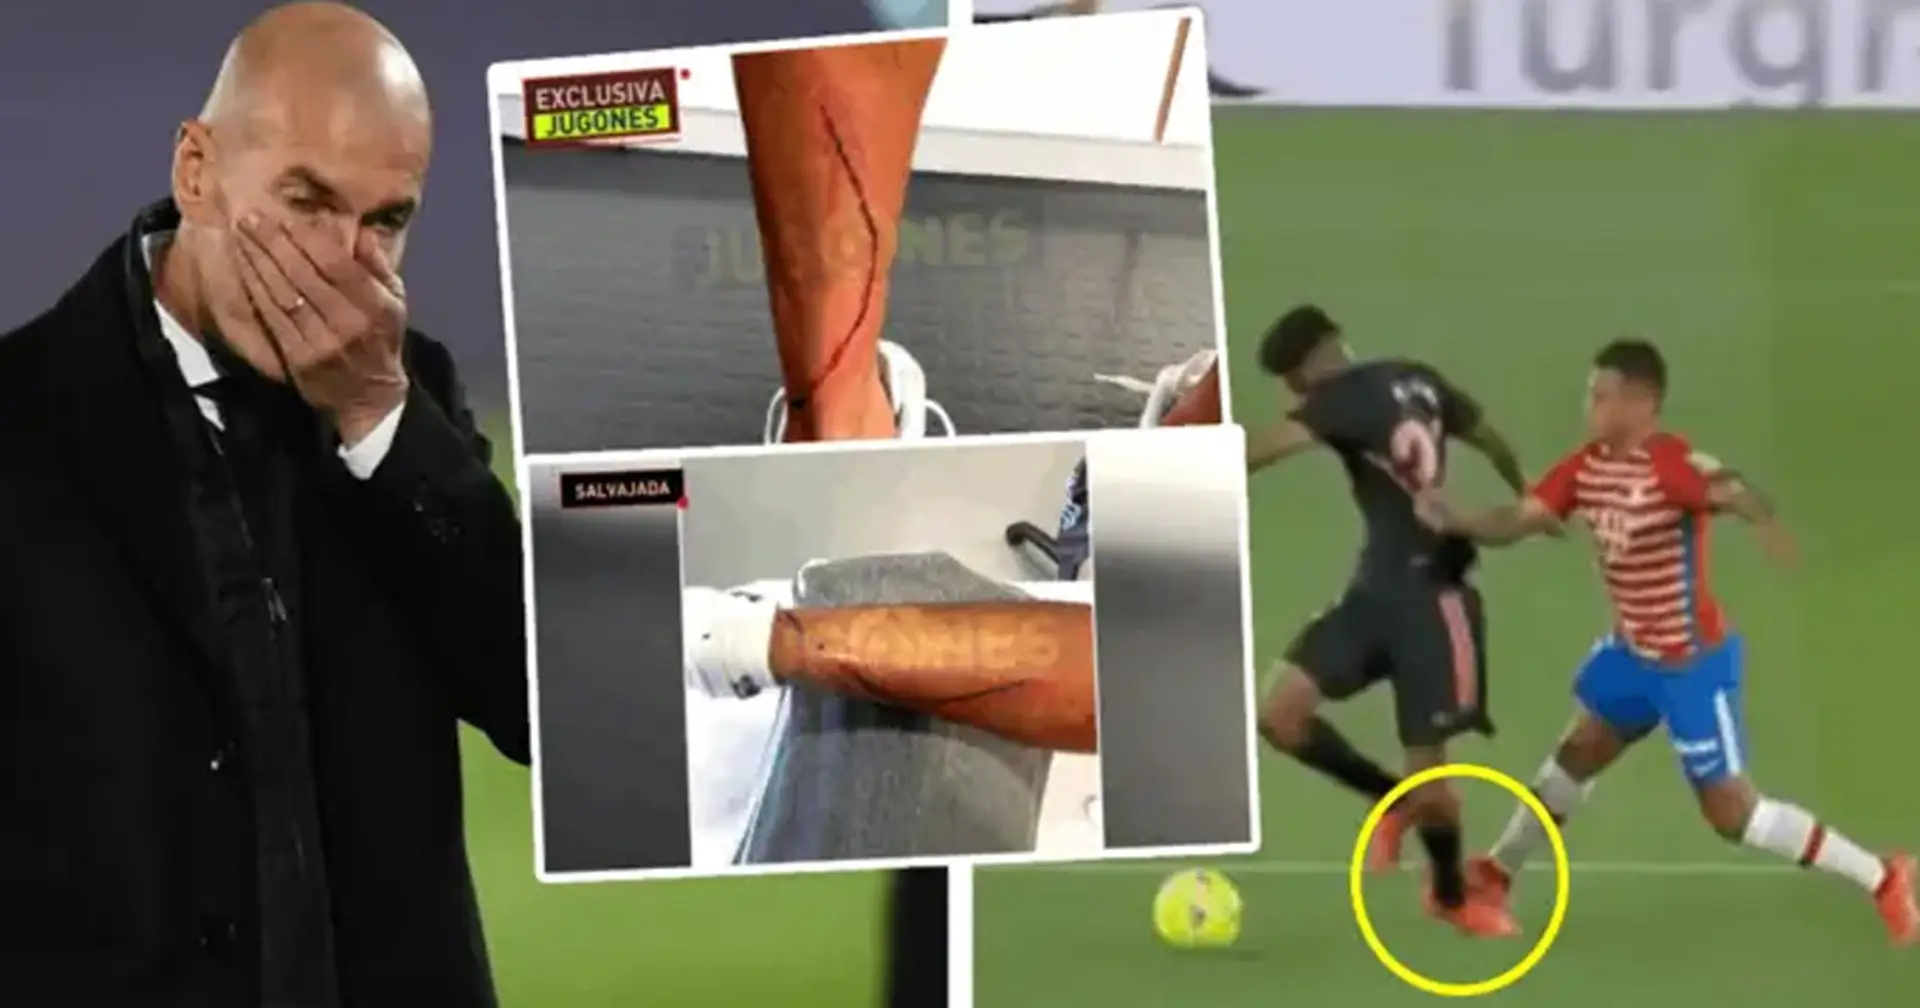 Imágenes del tobillo de Marvin después de la terrible falta de Machis se vuelven virales en redes sociales